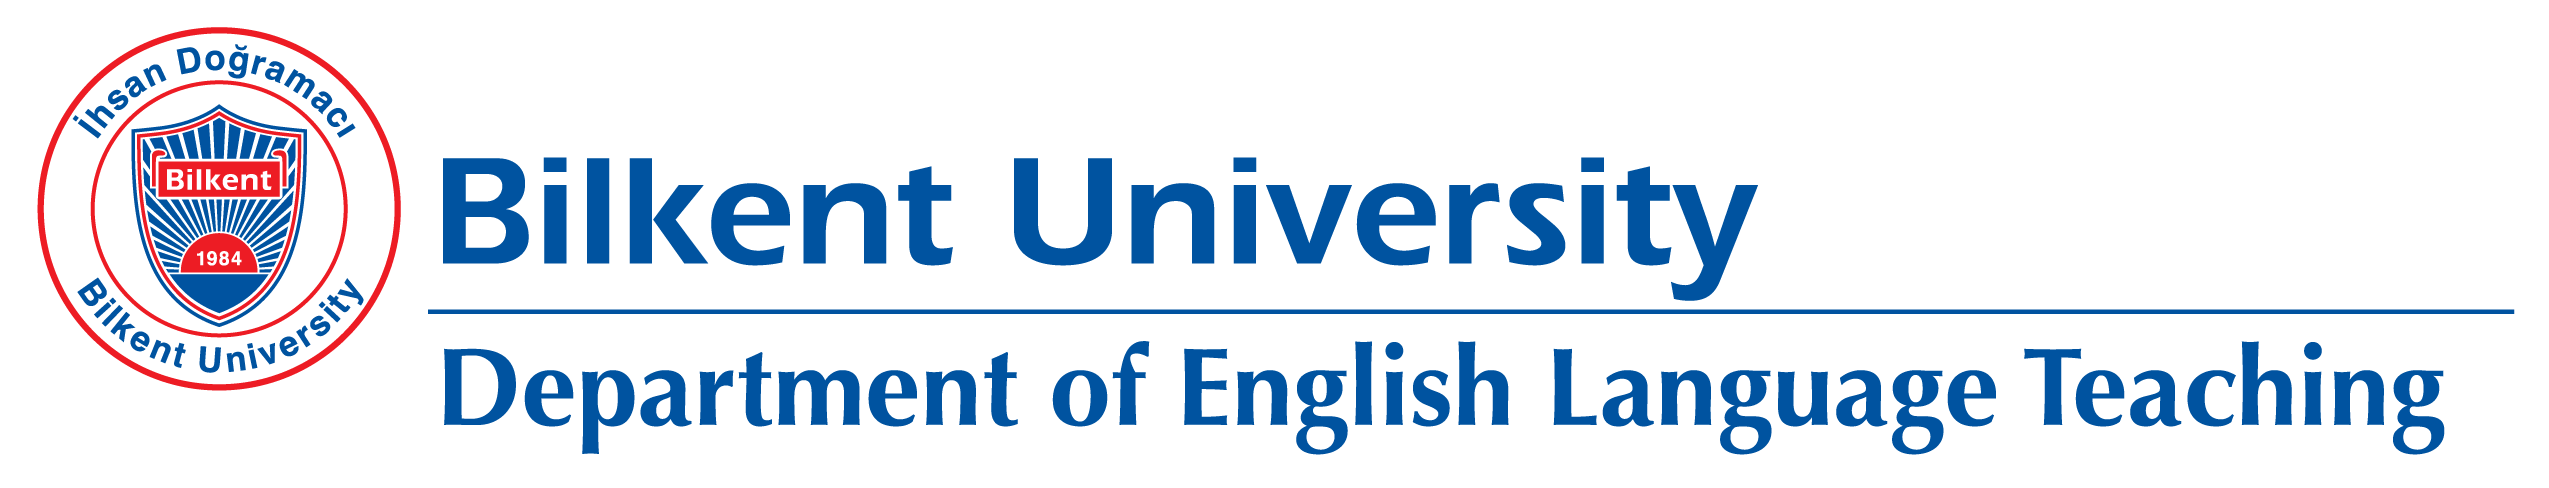 Department of English Language Teaching